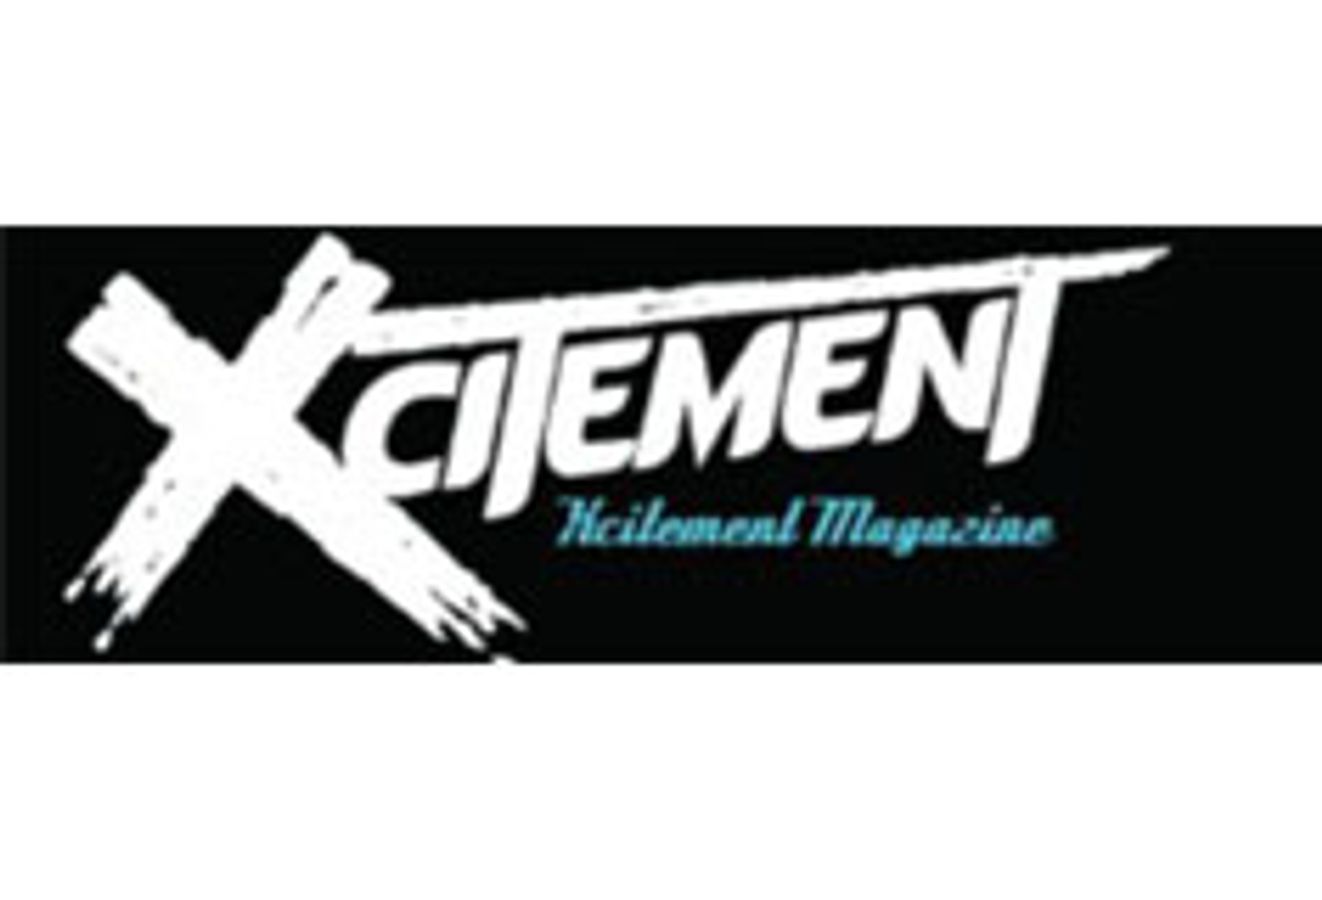 Xcitement Magazine